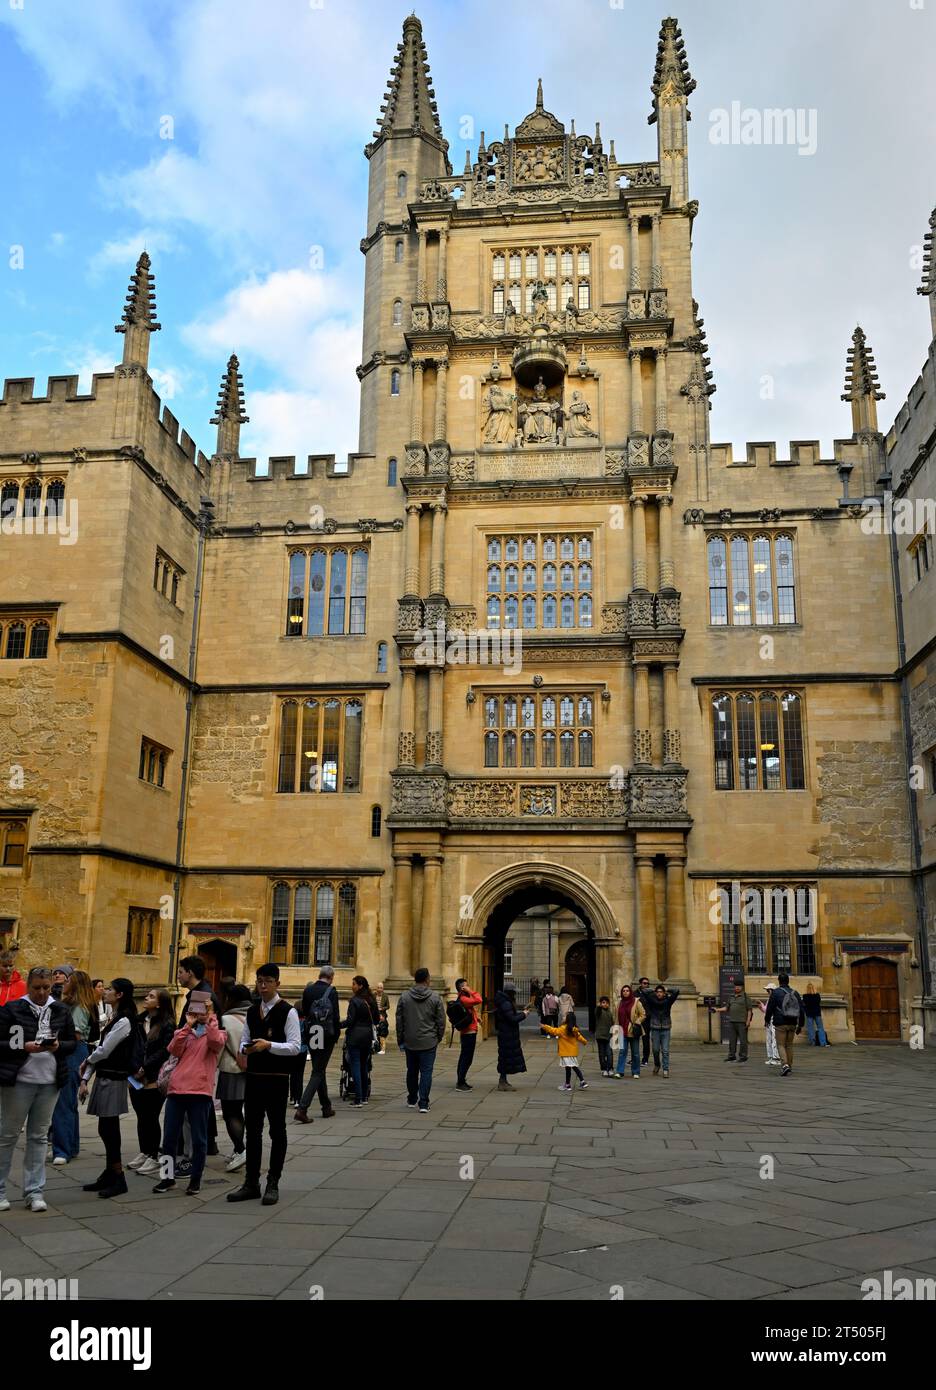 Cortile dell'Università di Oxford e torre della Bodleian Library, Oxford, Regno Unito Foto Stock